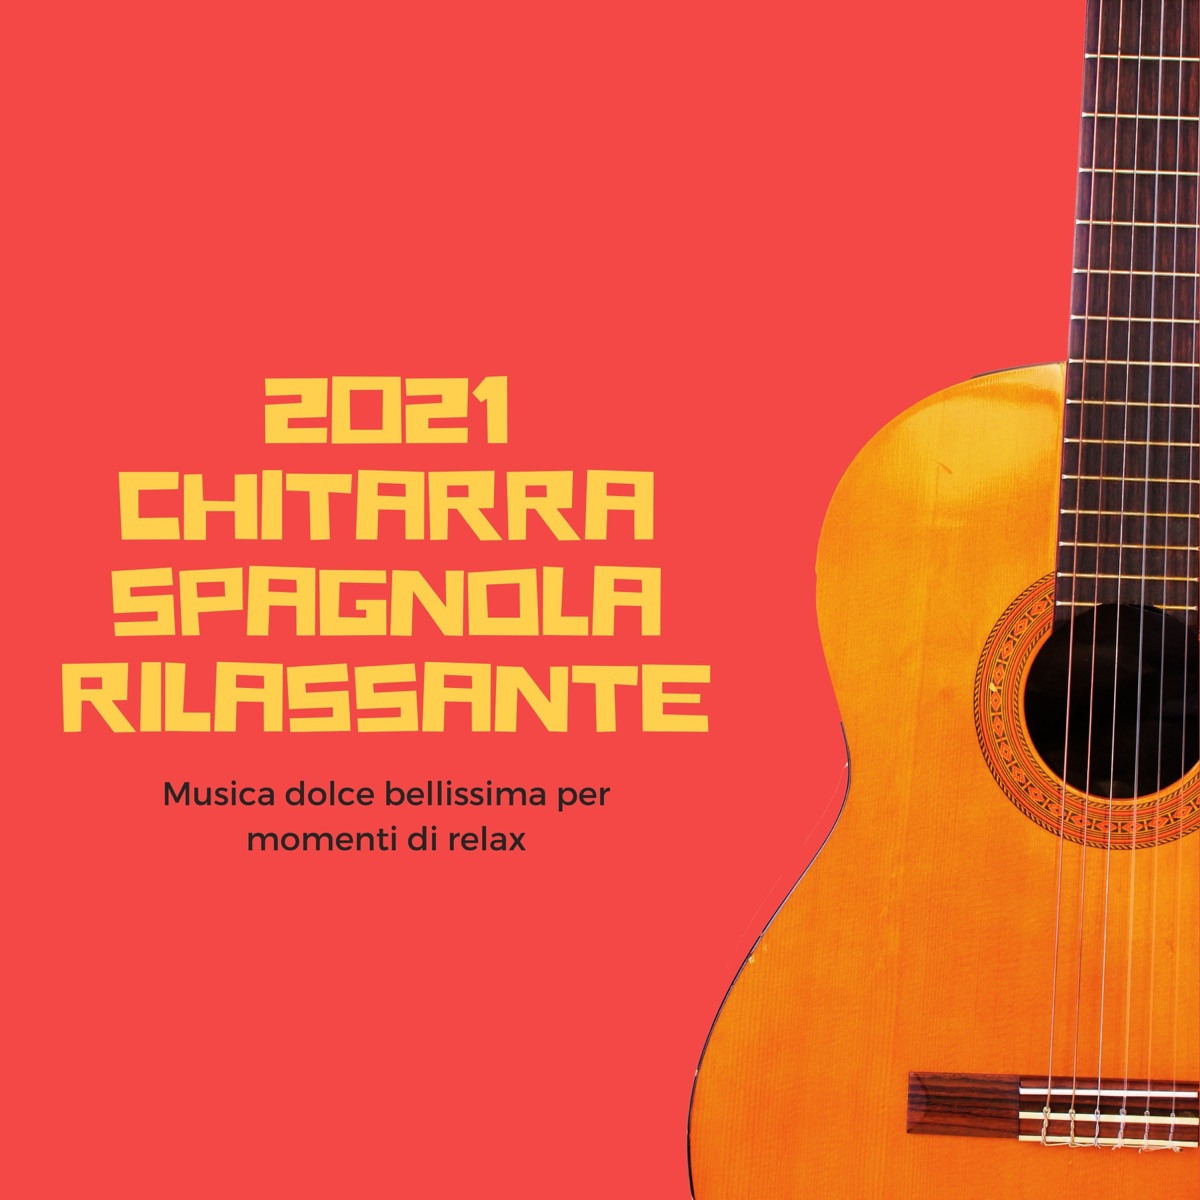 2021 Chitarra spagnola rilassante - Musica dolce bellissima per momenti di  relax by Anna Einaudi on Apple Music